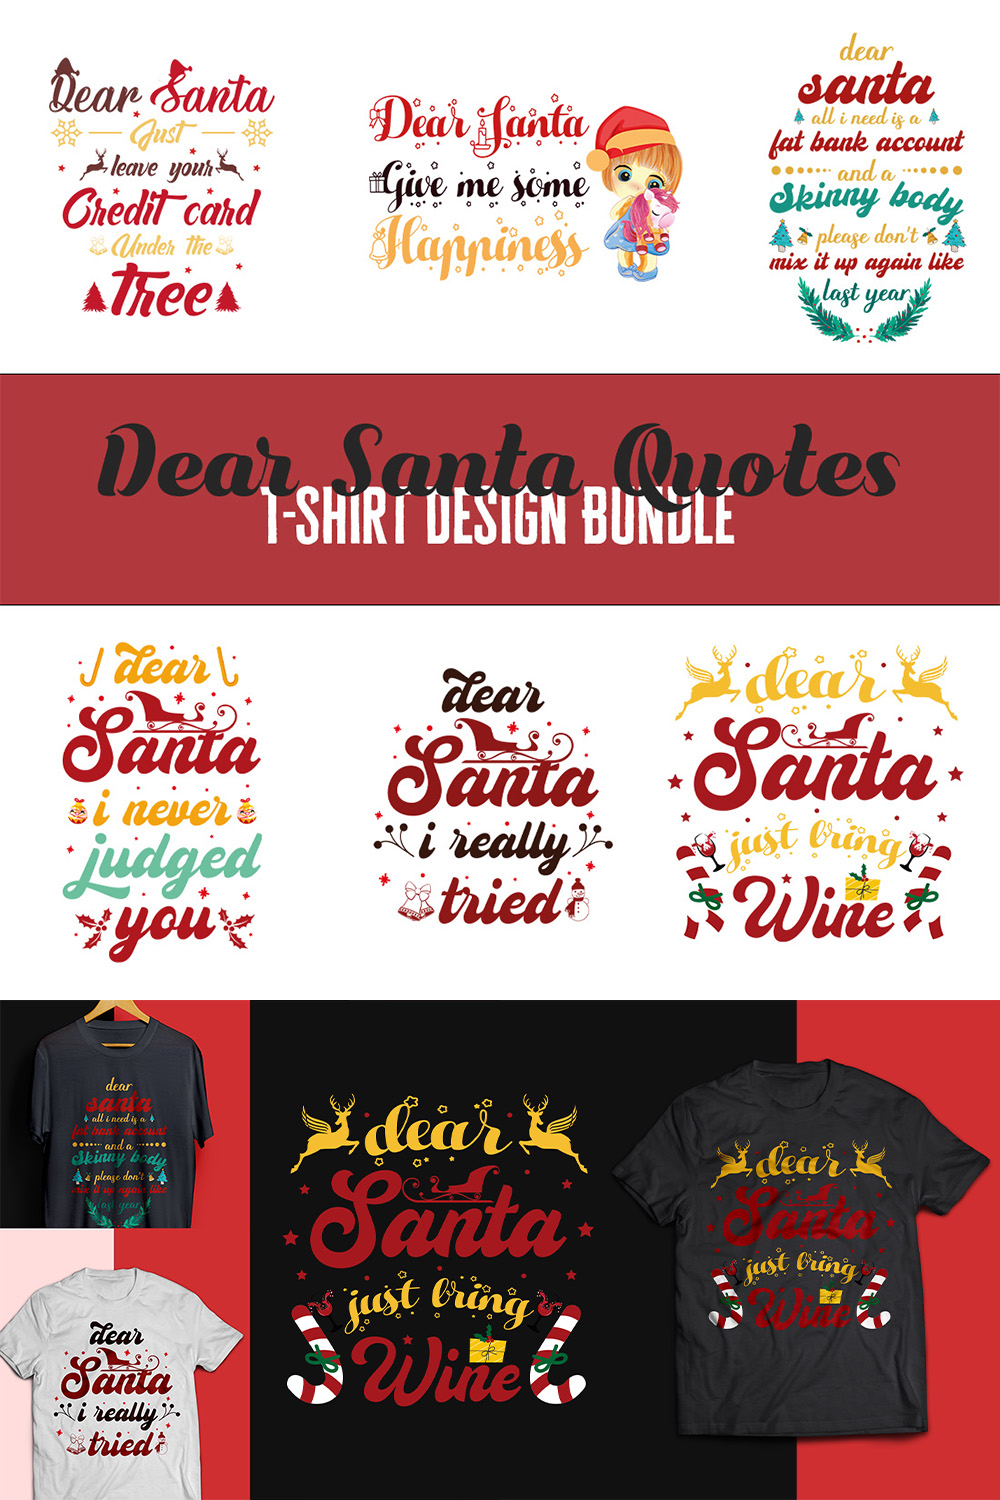 Dear Santa Quotes T-shirt Design Bundle pinterest image.